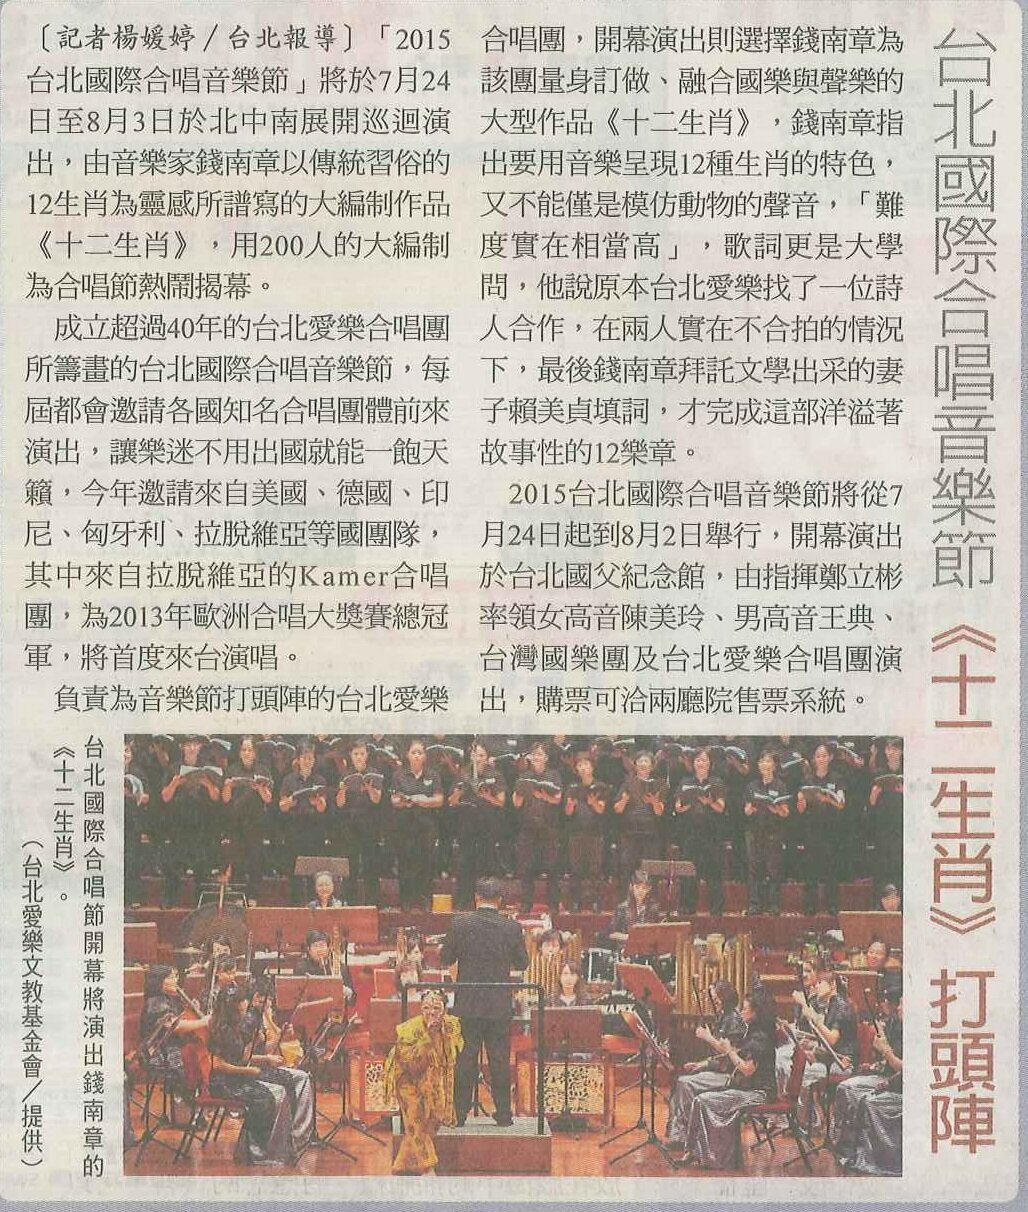 【自由時報】台北國際合唱音樂節 《十二生肖》打頭陣